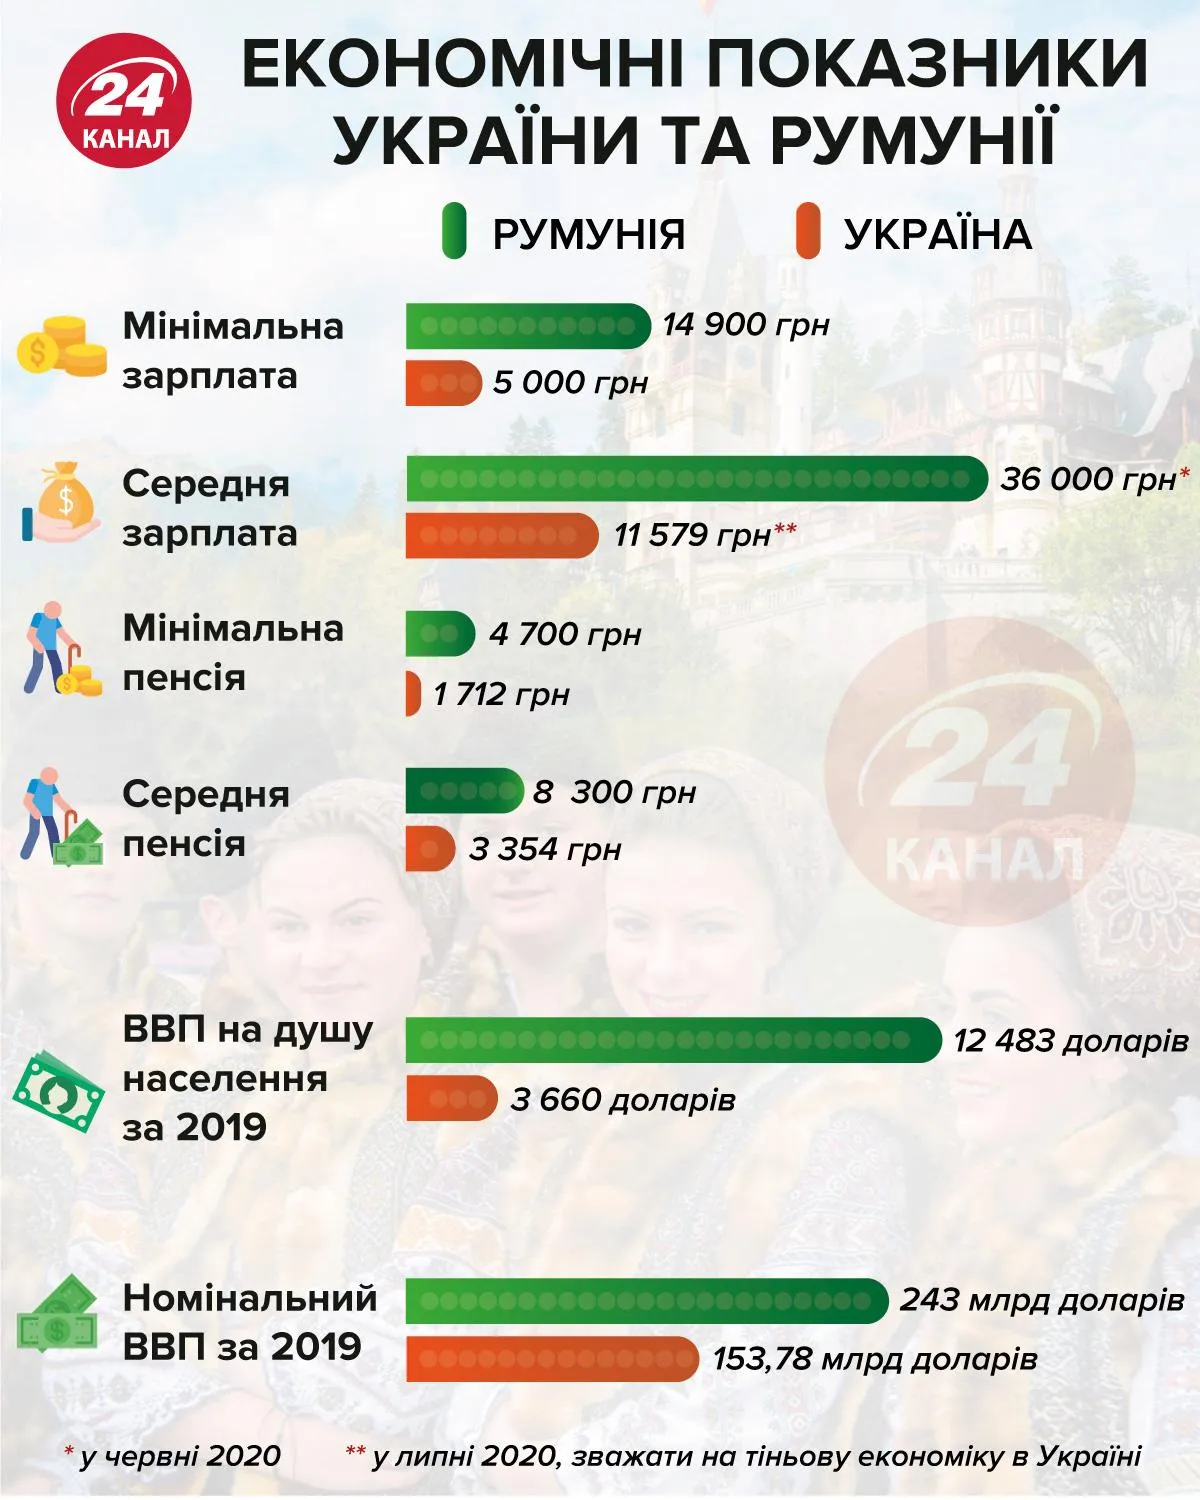 Экономические показатели Румунии и Украины инфографика 24 канал